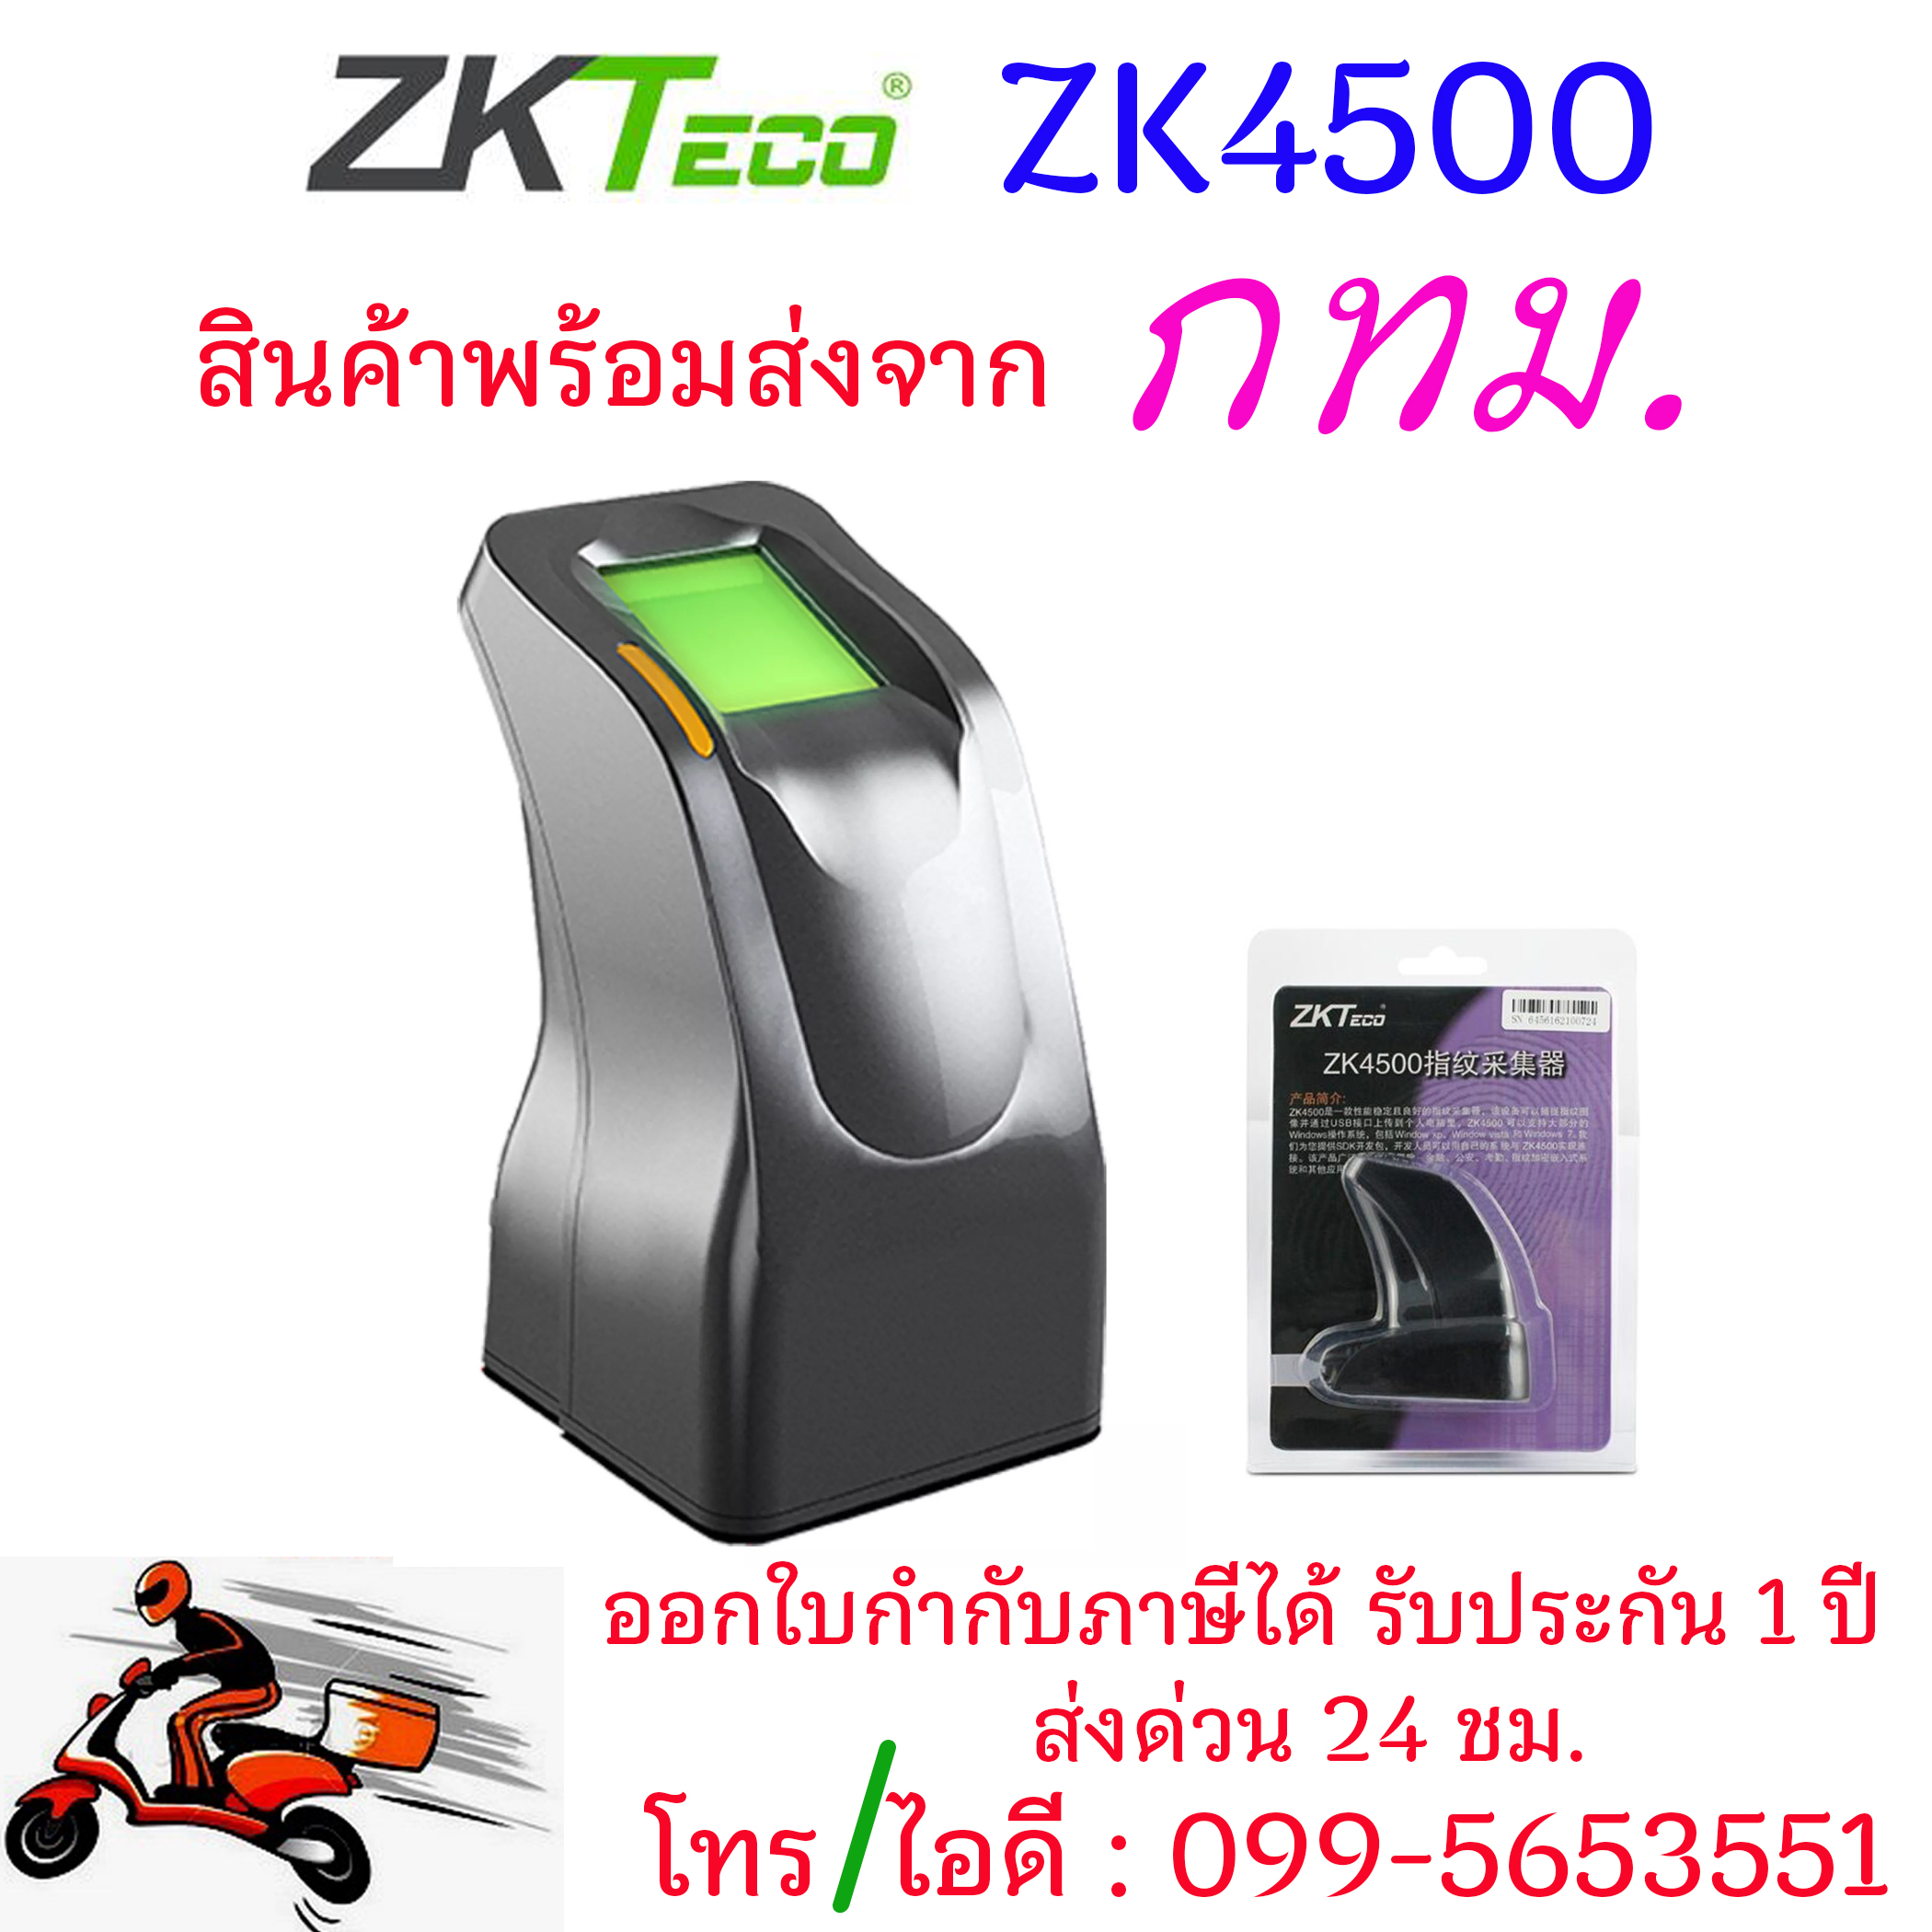 พร้อมส่ง ZKTeco ZK4500 USB Reader FingerPrint หัวอ่านลายนิ้วมือ สำหรับจัดเก็บลายนิ้วมือลงคอมพิวเตอร์ ฟรี SDK ใช้ร่วมกับ Access control ZKTeco NOD สำหรับช่างติดตั้ง